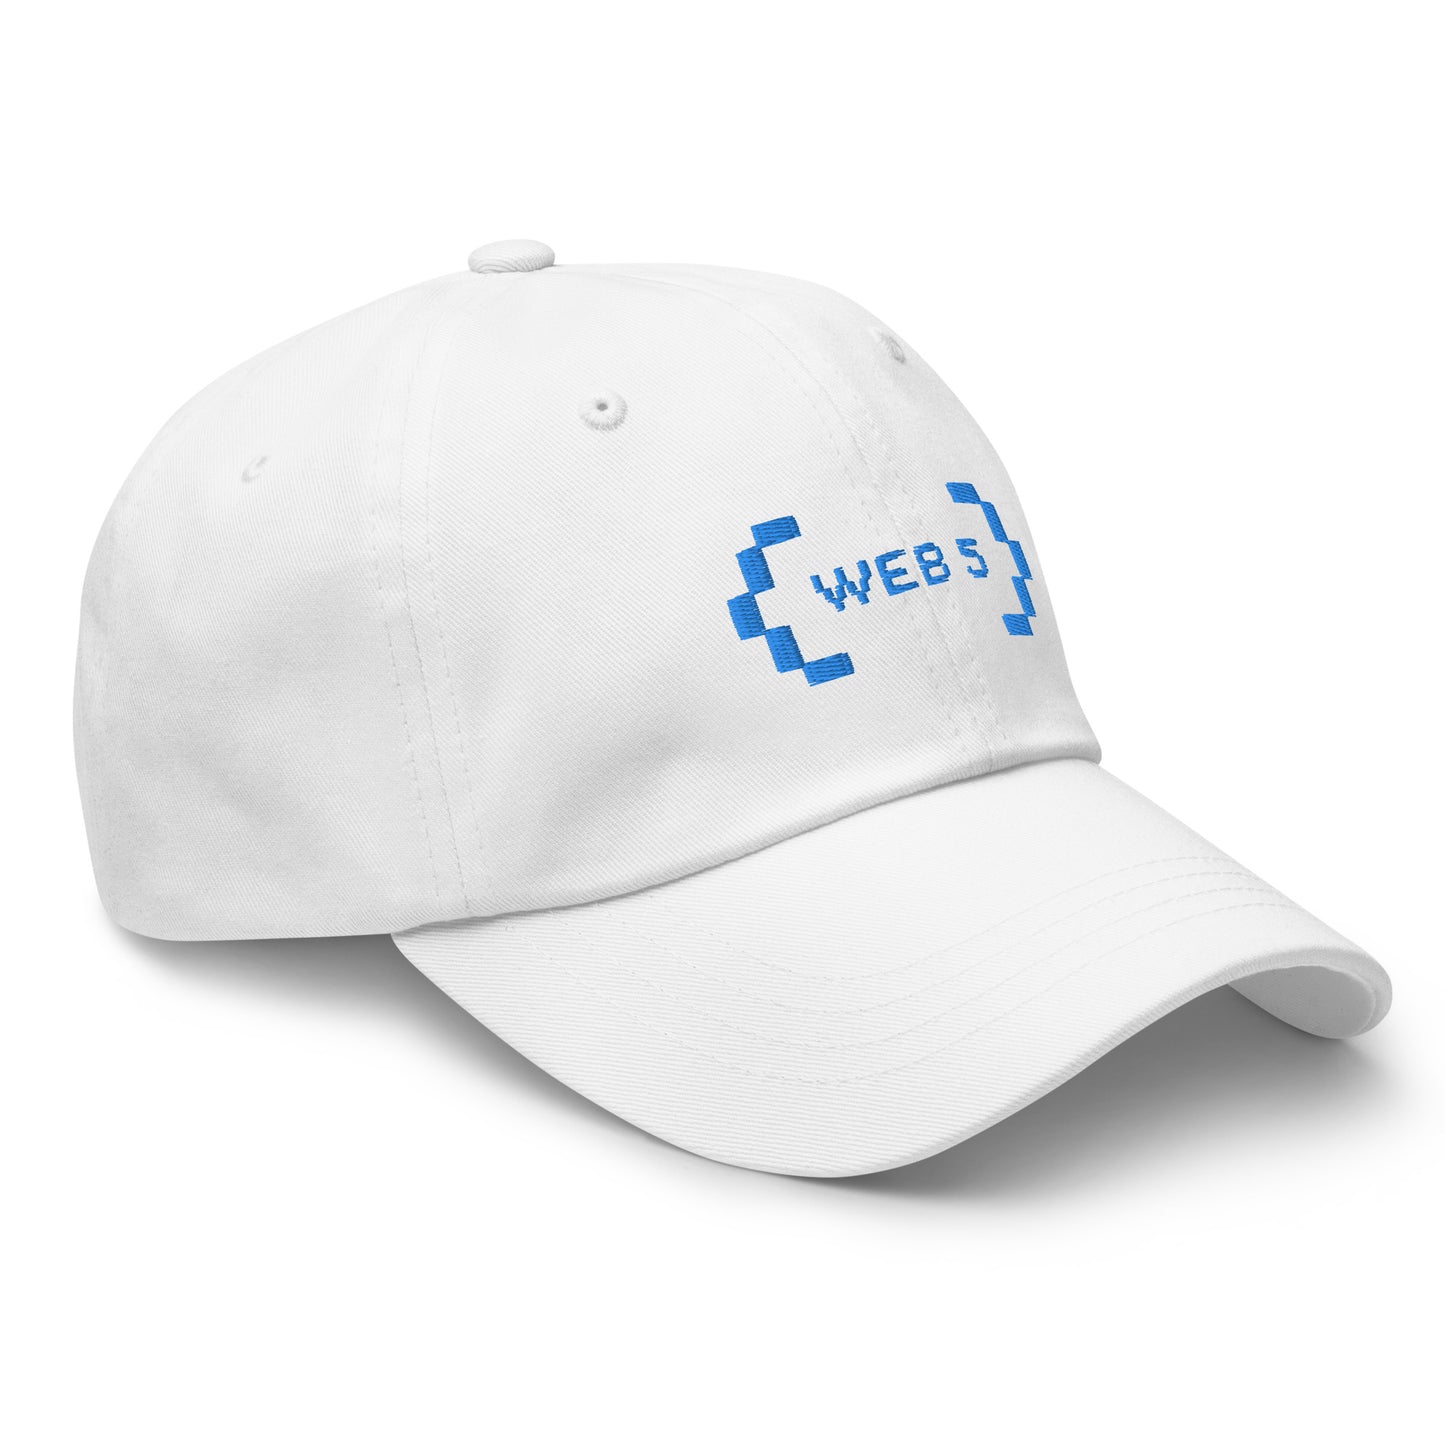 Web5 Dad Hat